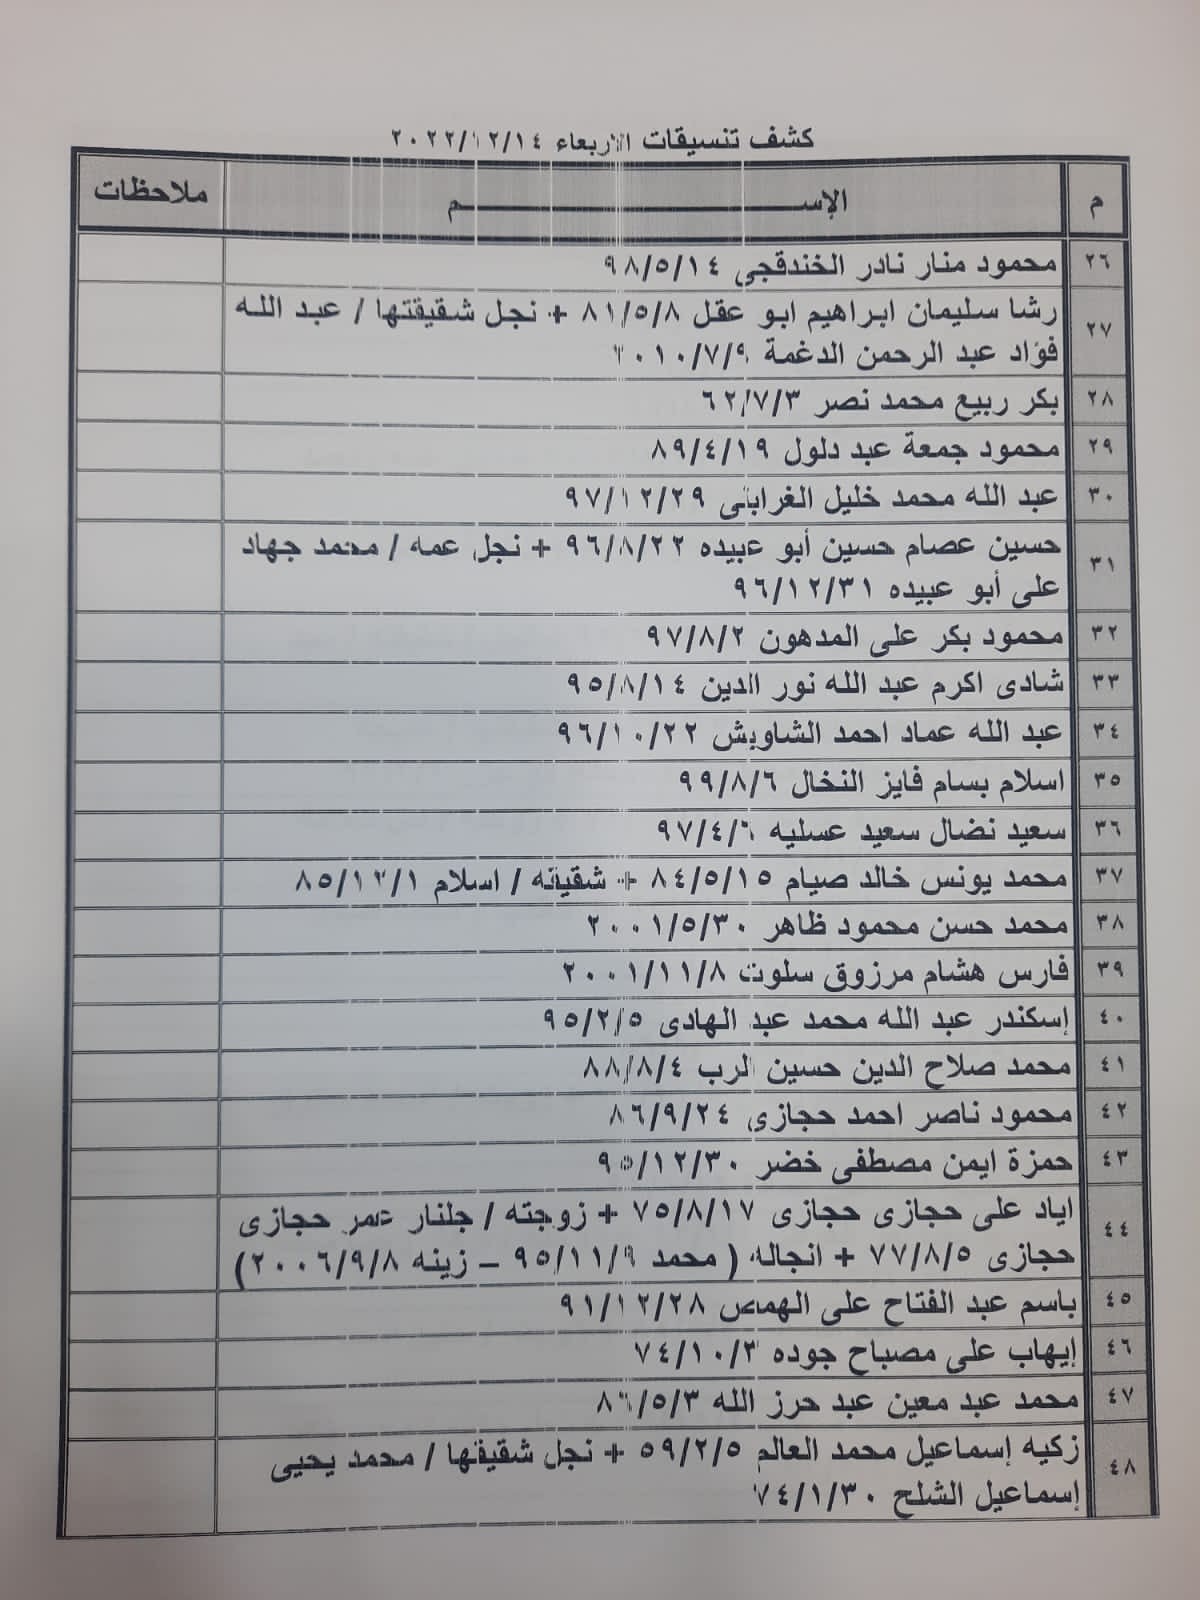 بالأسماء: كشف "التنسيقات المصرية" للسفر عبر معبر رفح غدًا الأربعاء 14 ديسمبر 2022